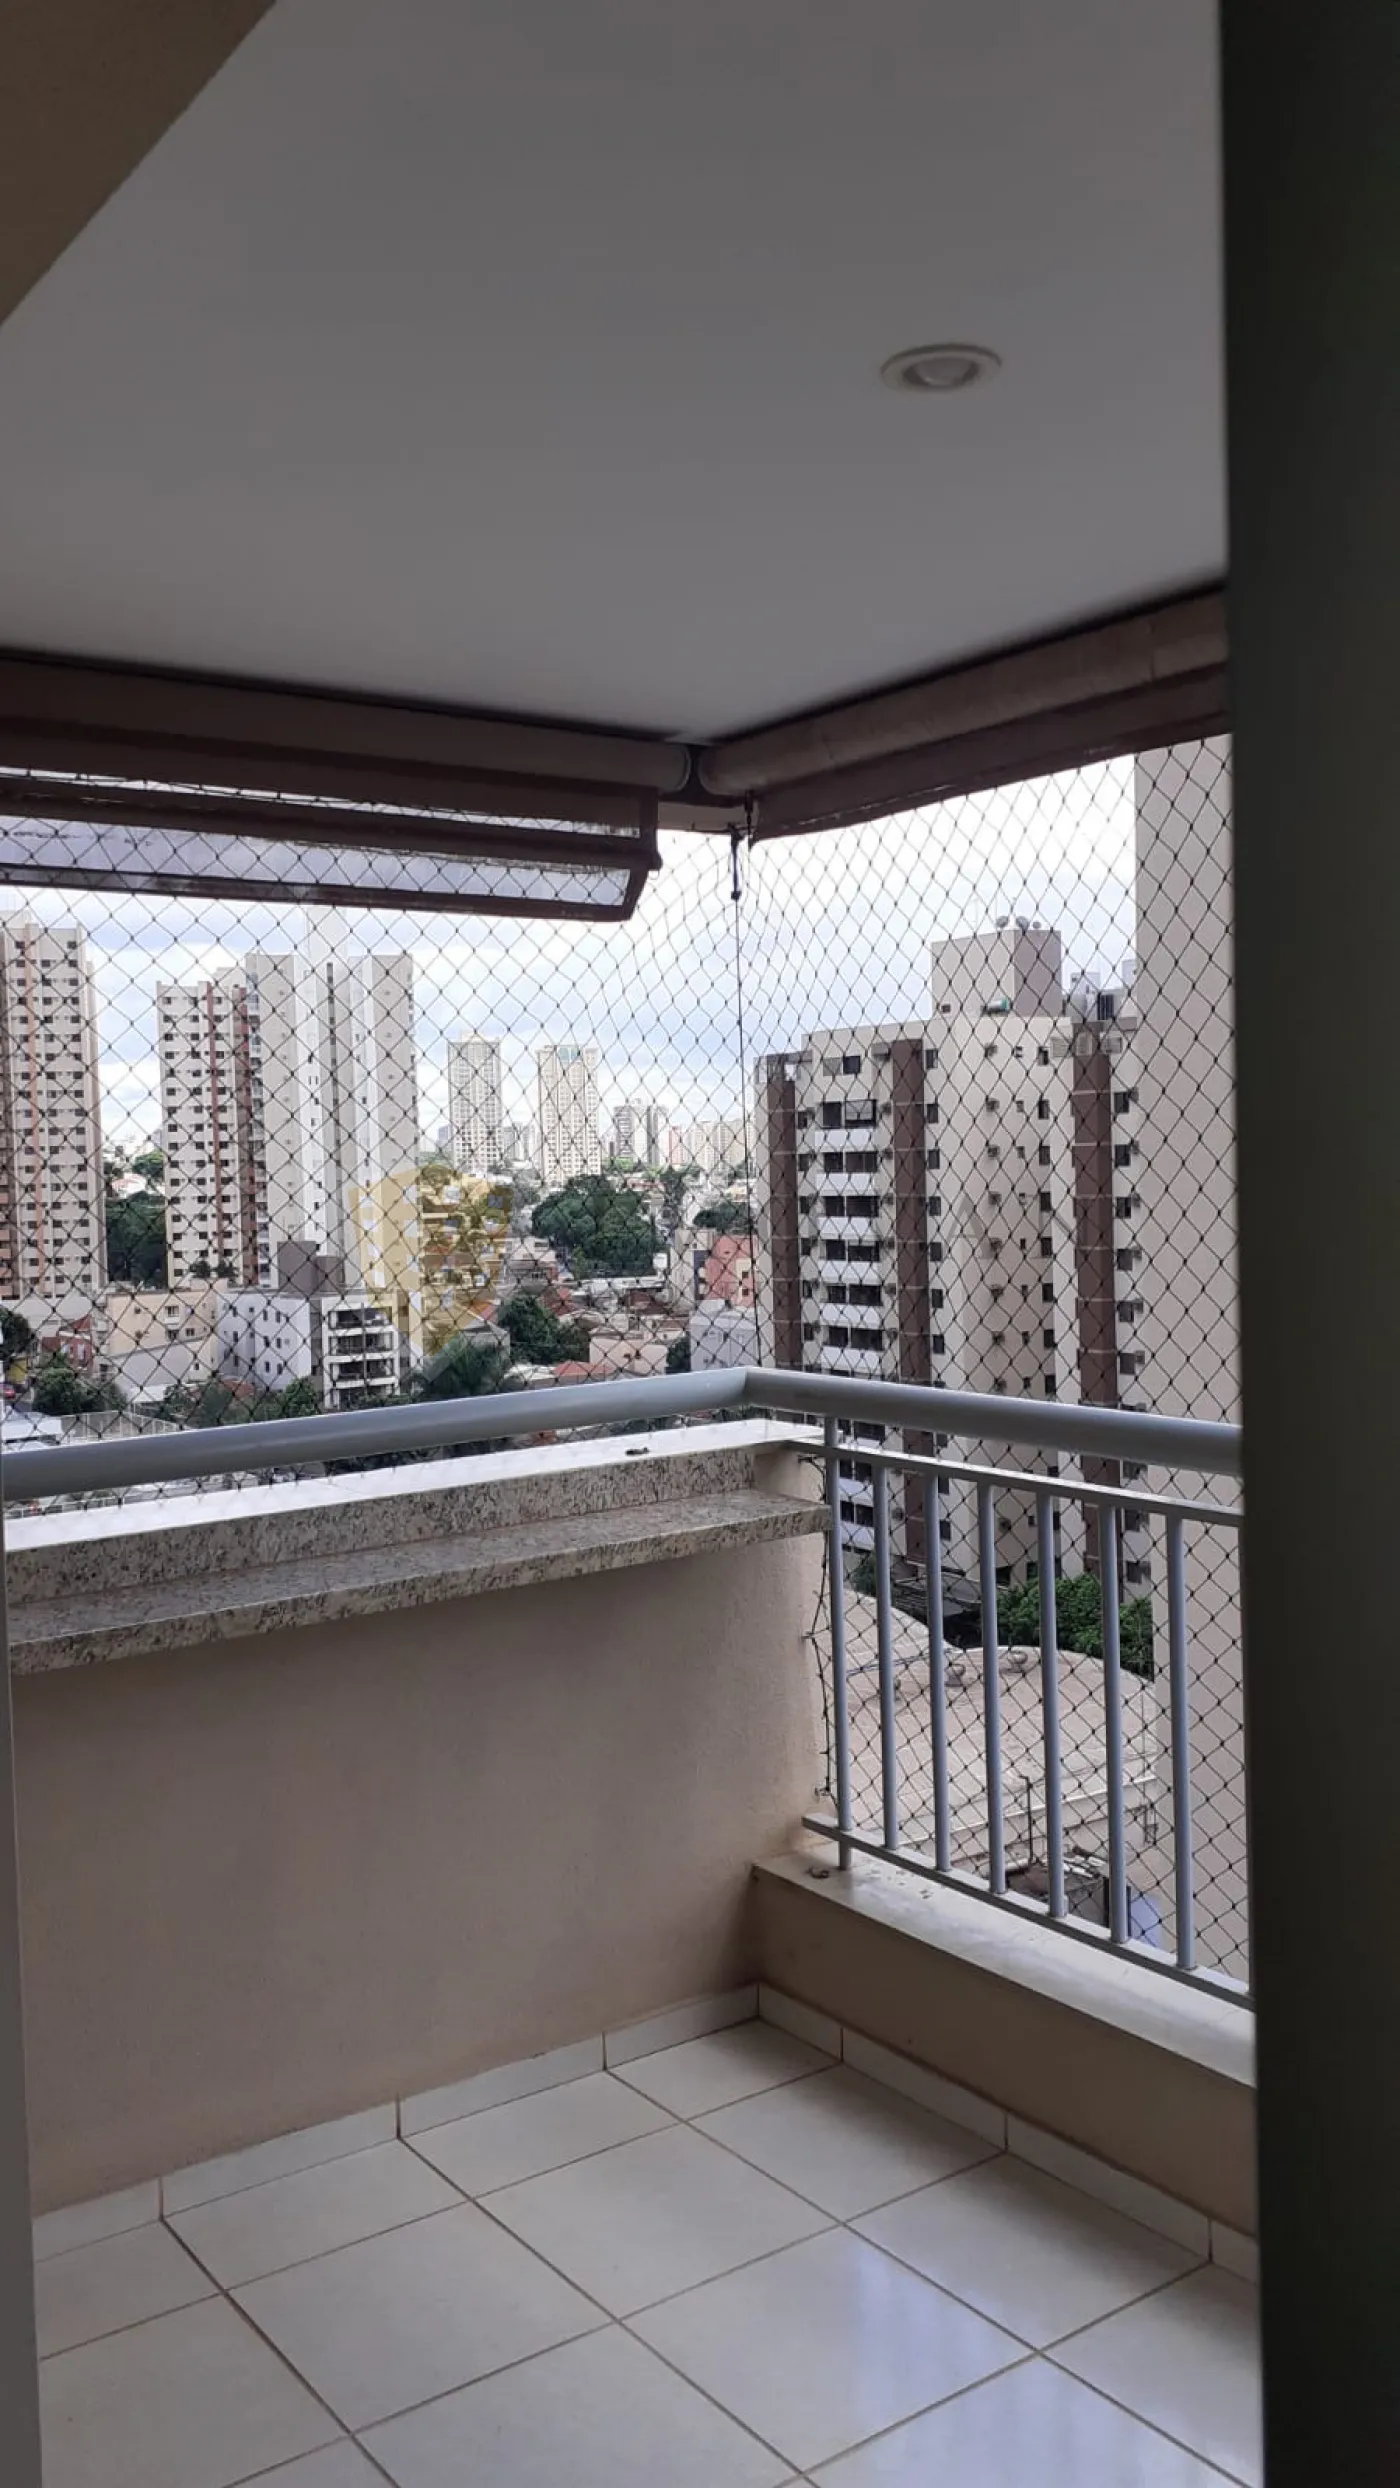 Comprar Apartamento / Padrão em Ribeirão Preto R$ 630.000,00 - Foto 8